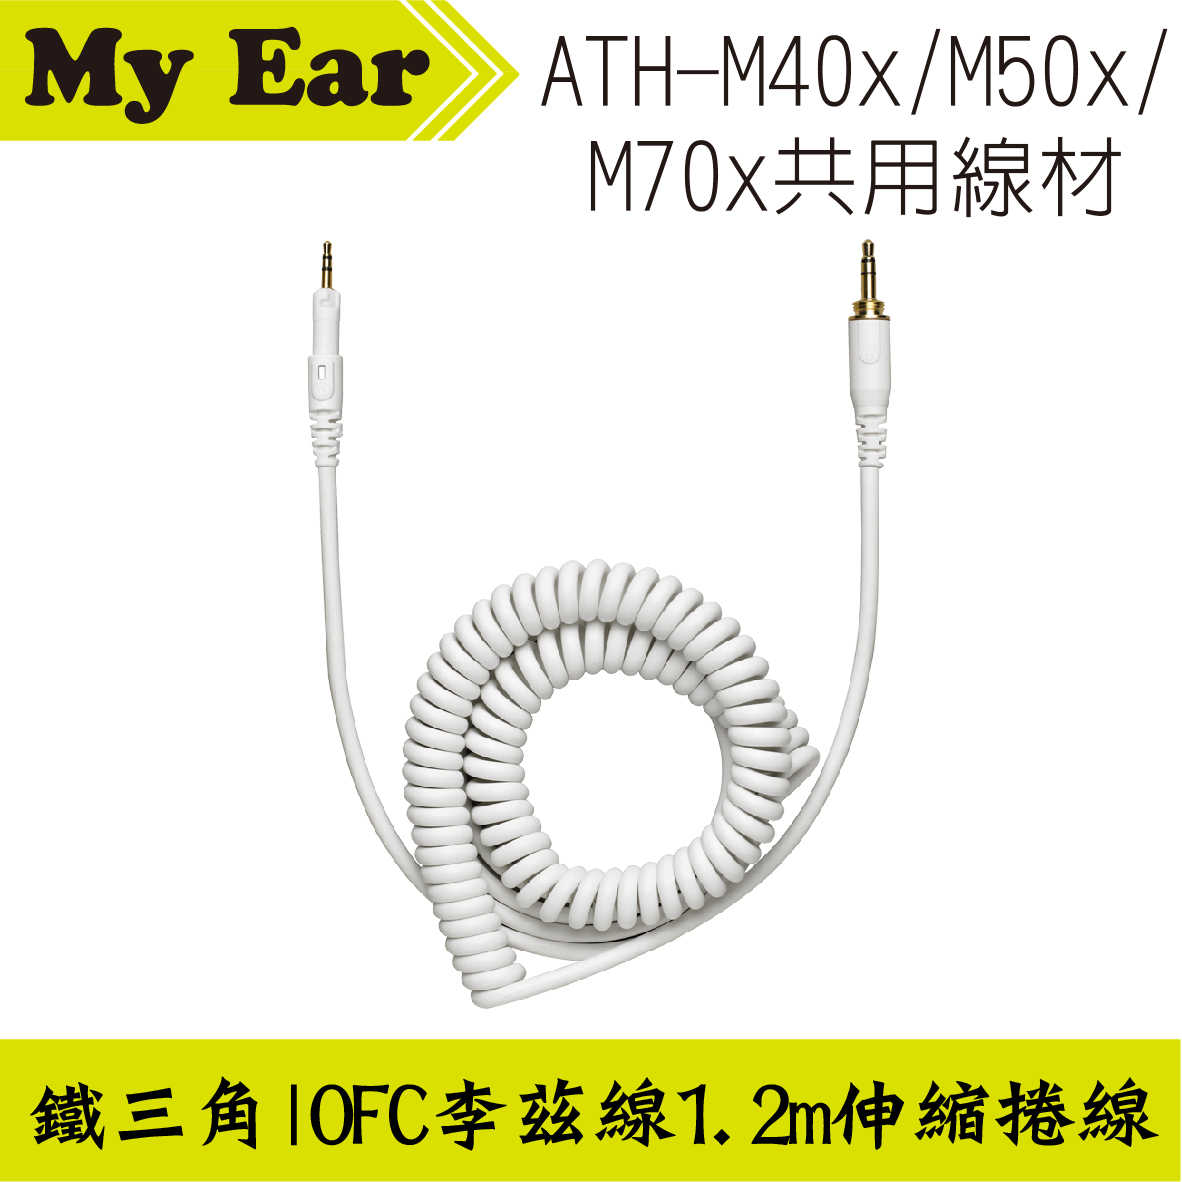 鐵三角 ATH-M40x M50x M70x 適用 可拆式 直型導線 3.0m | My Ear 耳機專門店